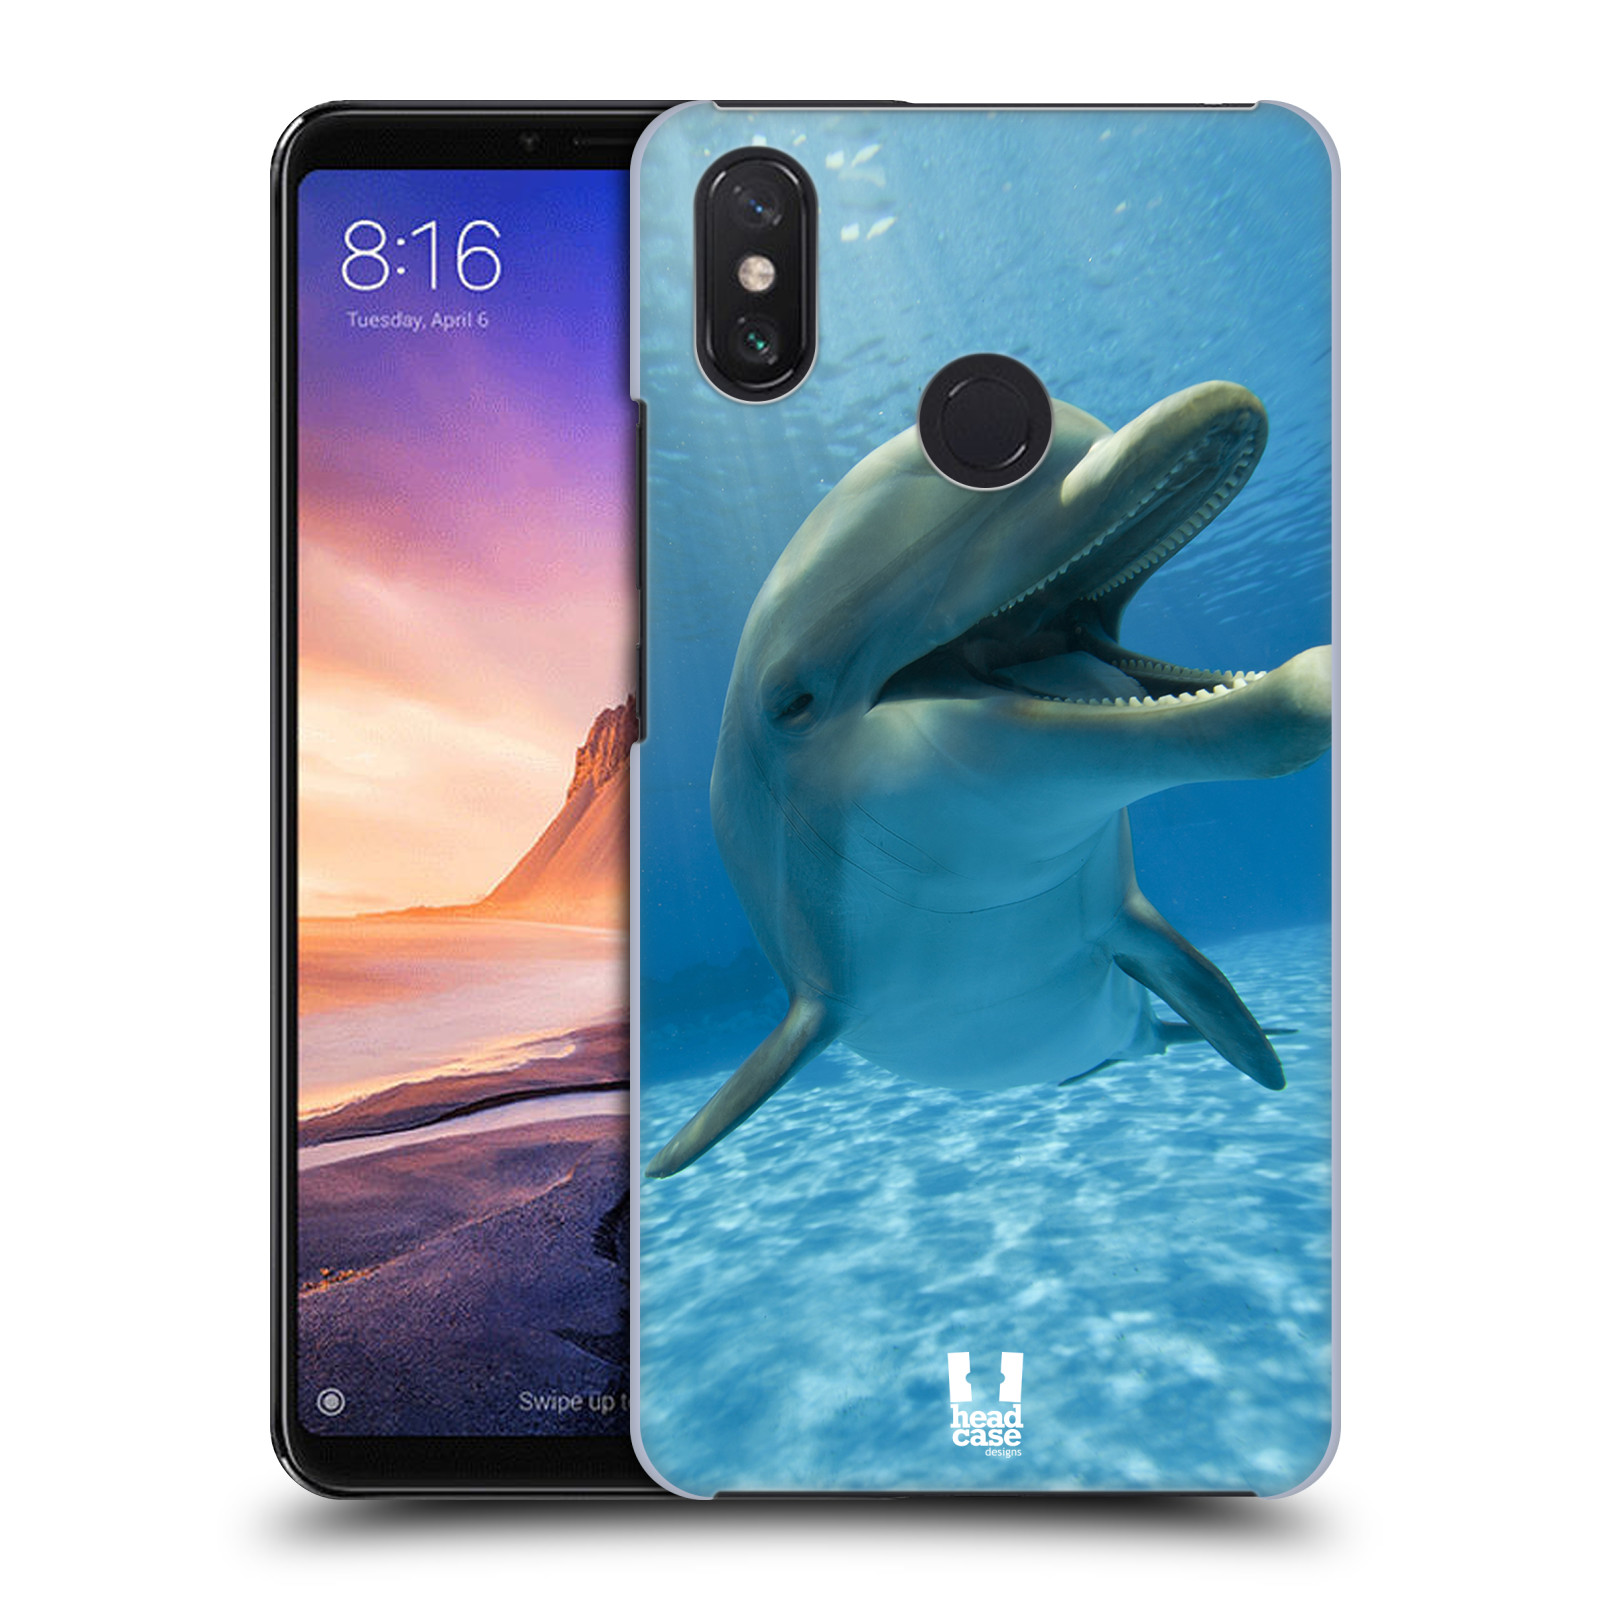 Zadní obal pro mobil Xiaomi Mi Max 3 - HEAD CASE - Svět zvířat delfín v moři